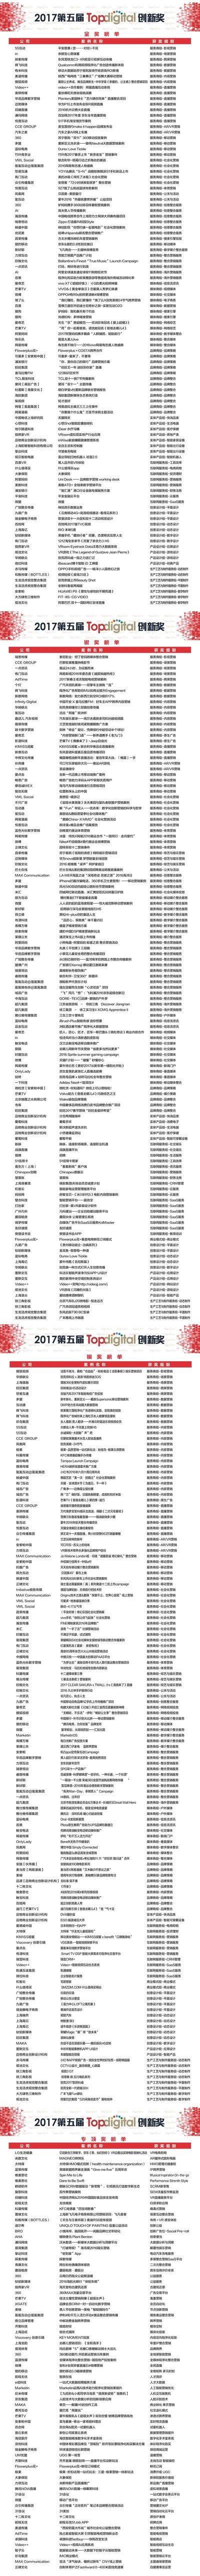 2017第五届TopDigital创新奖榜单